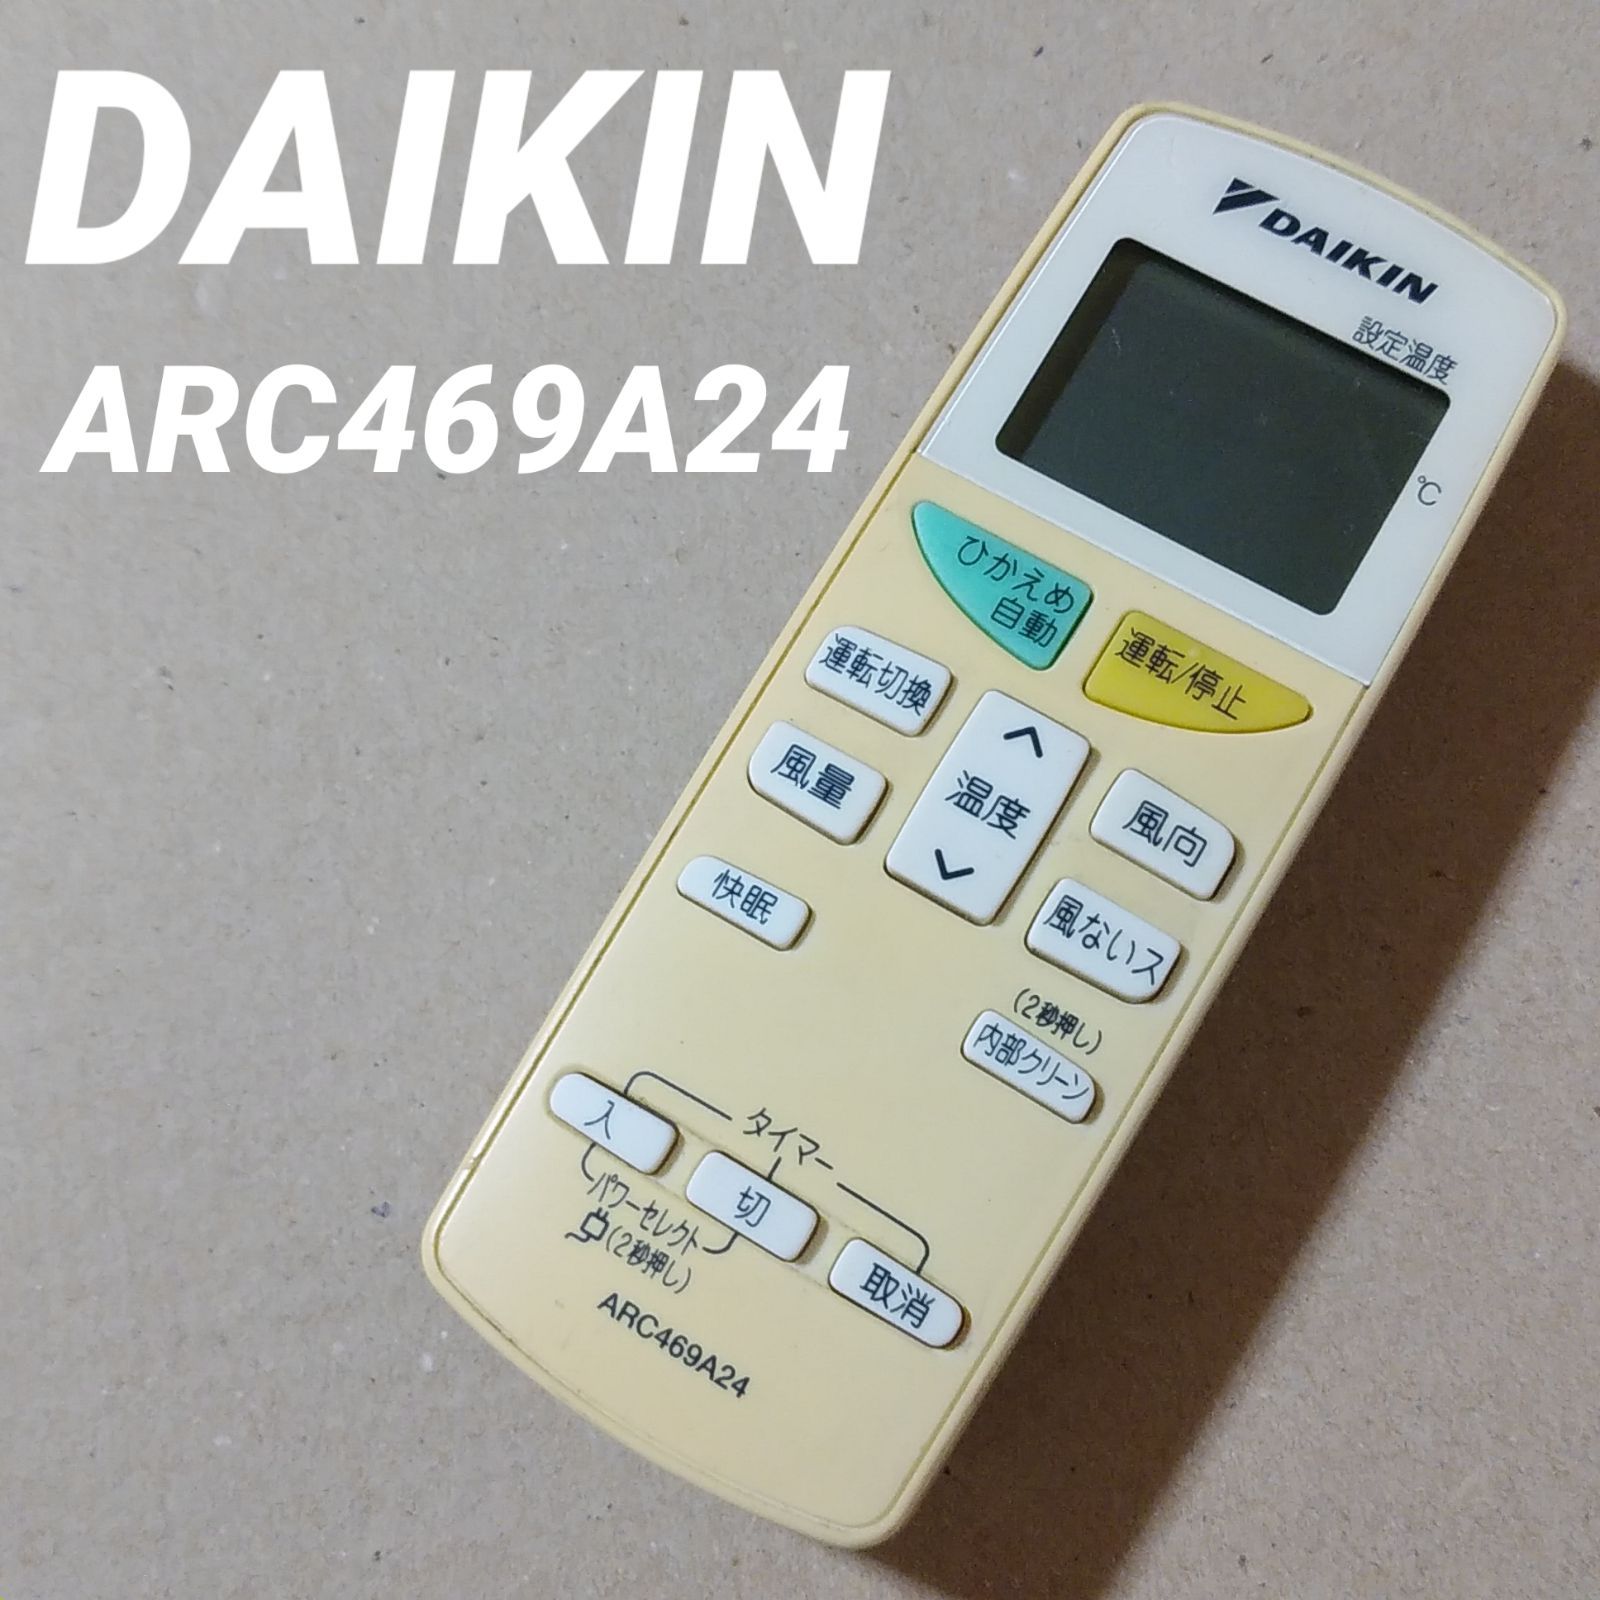 ARC469A24